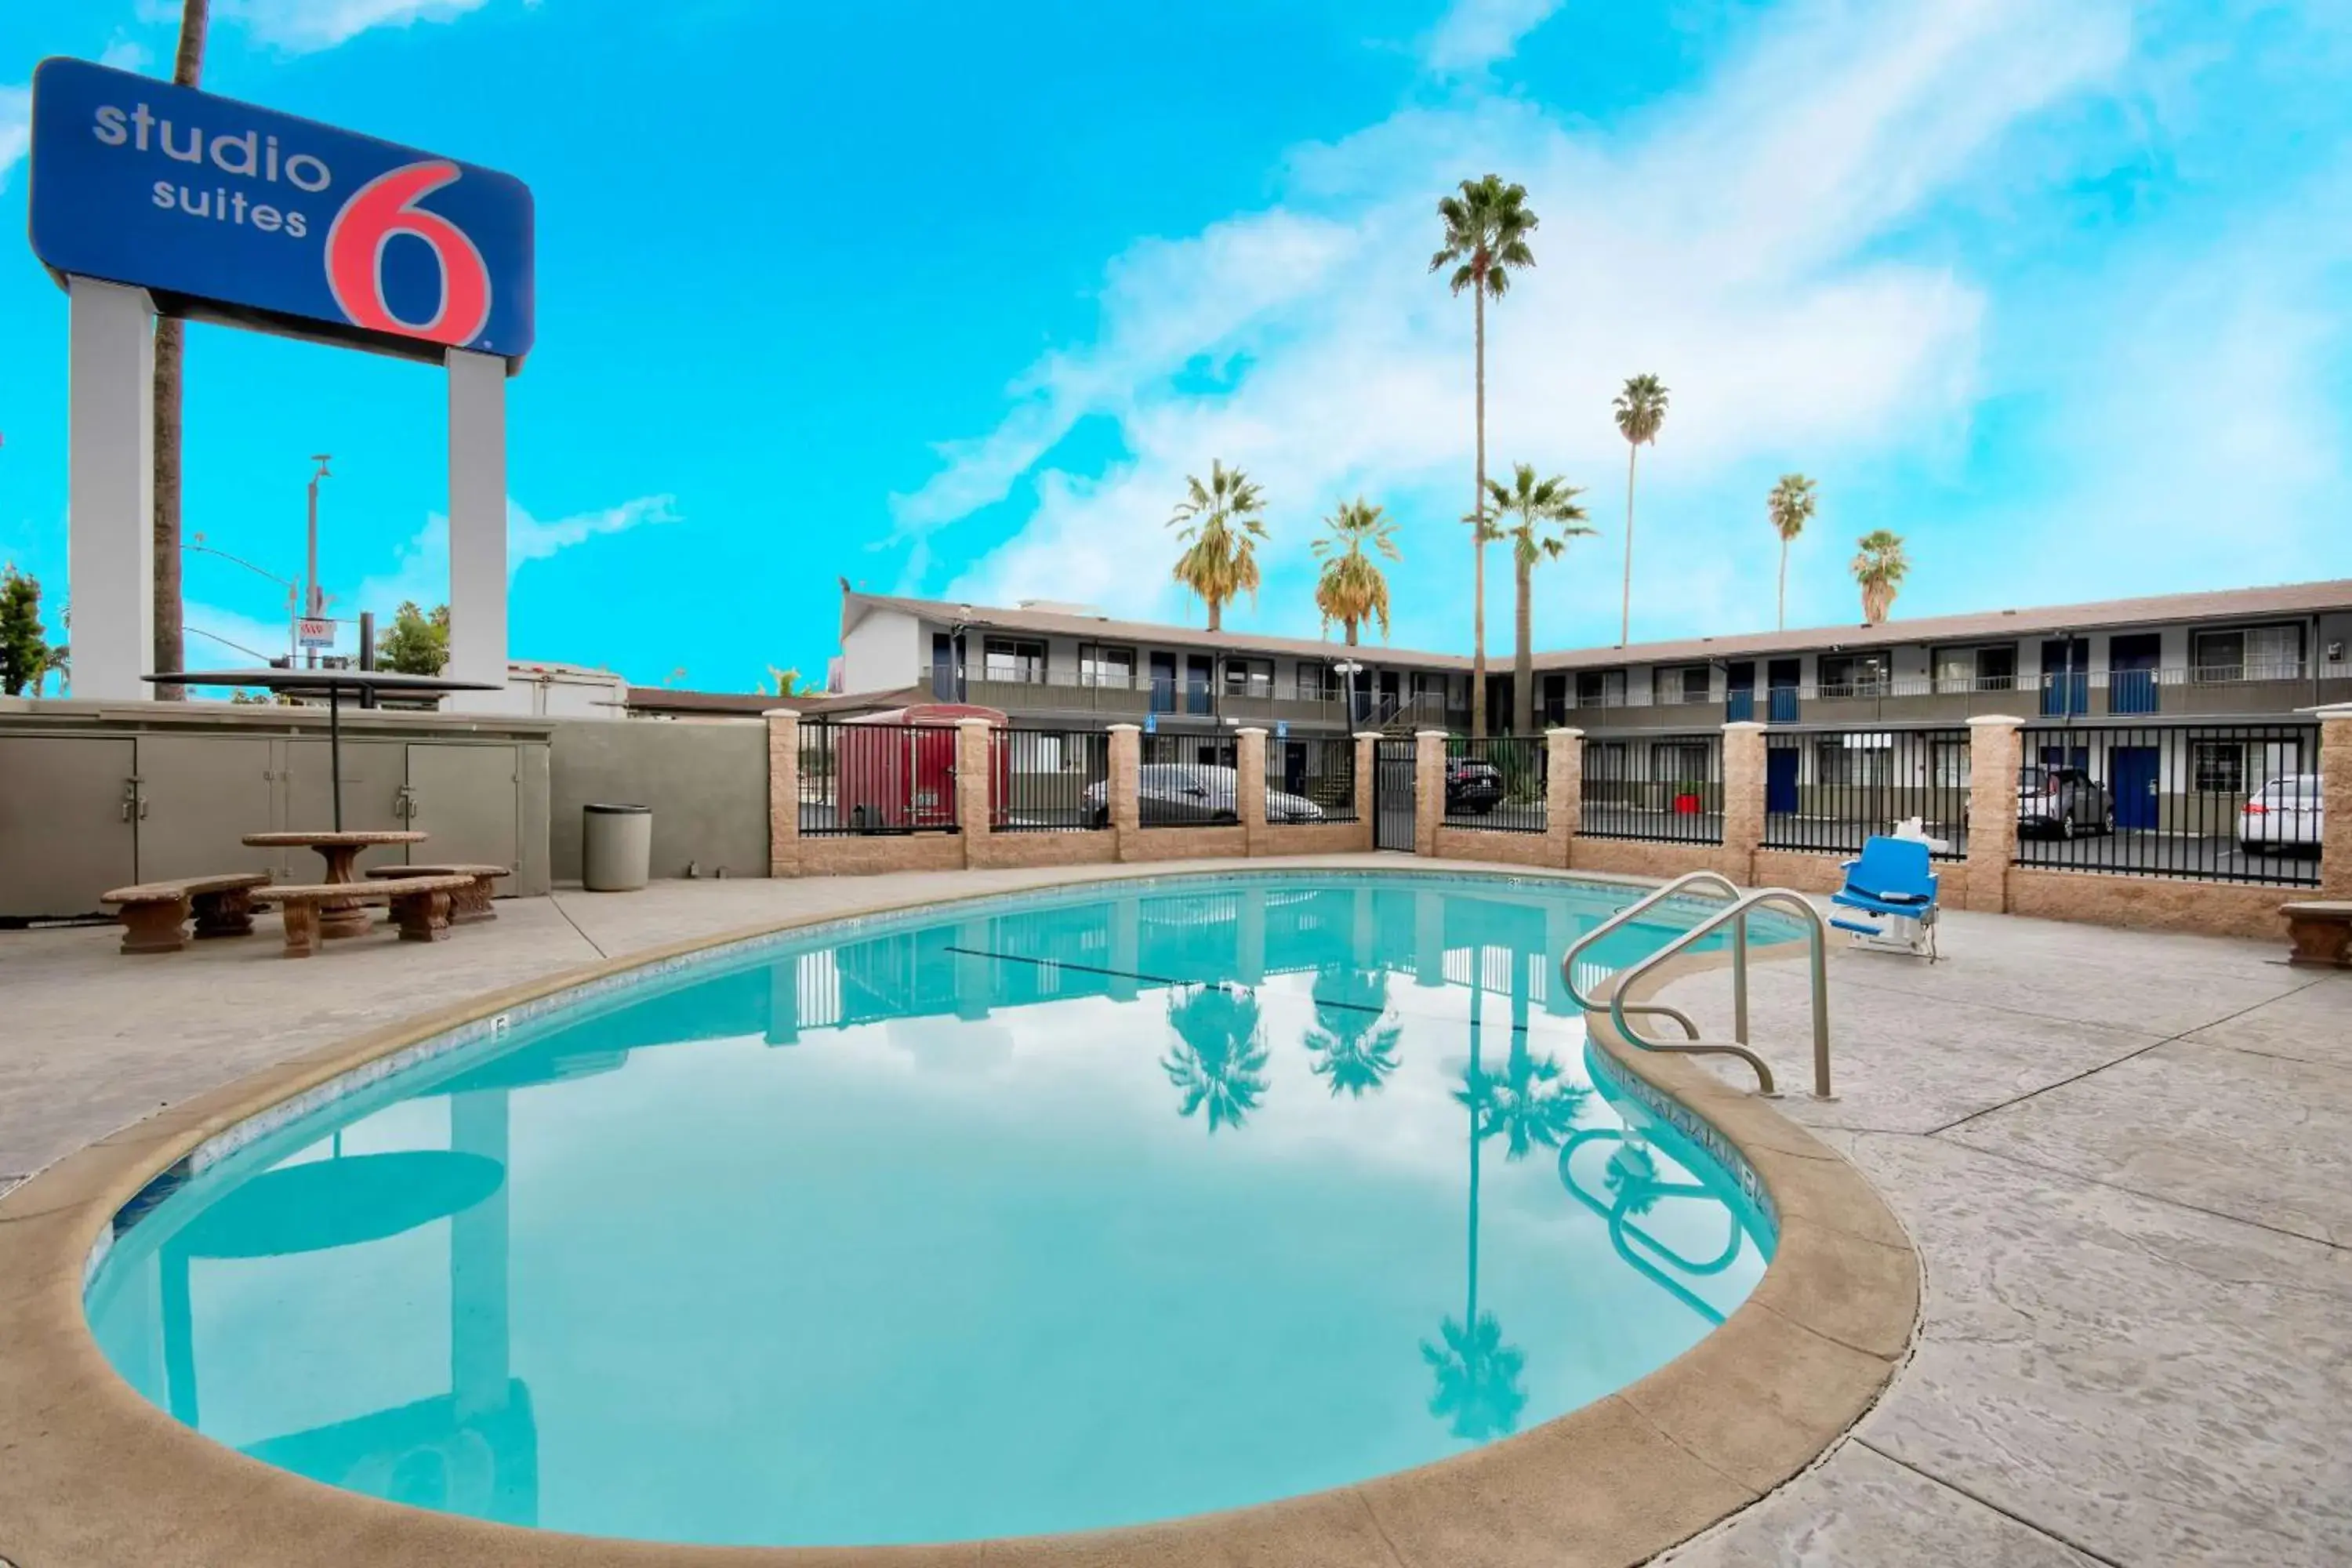 Pool view, Swimming Pool in Studio 6 Suites San Bernardino, CA